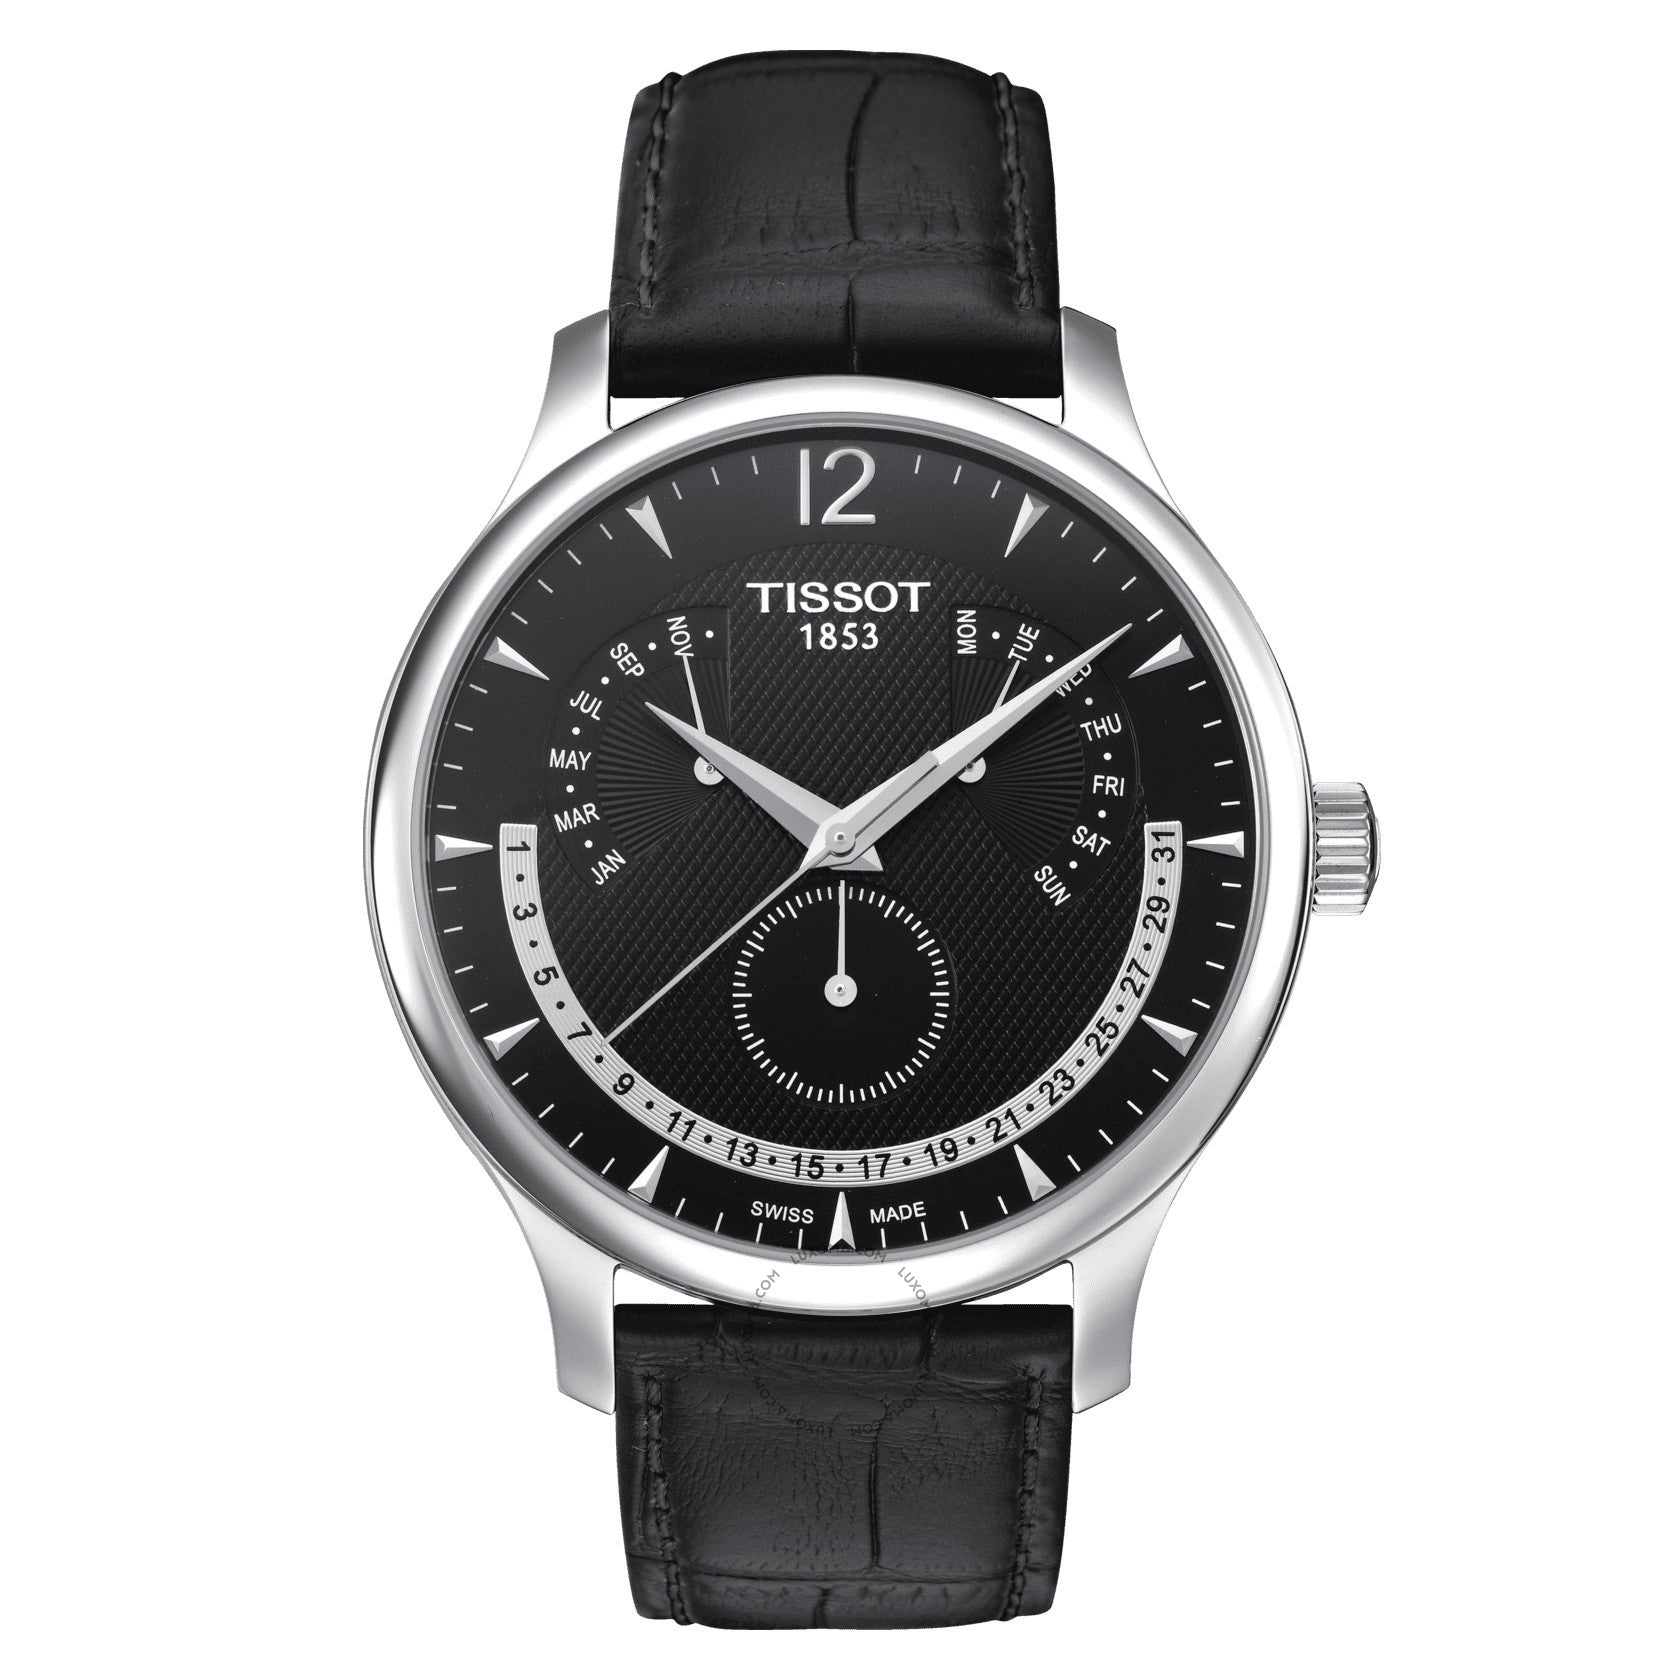 Tissot Tradition Perpetual Calendar Quartz Black Dial Men's Watch T063.637.16.057.00